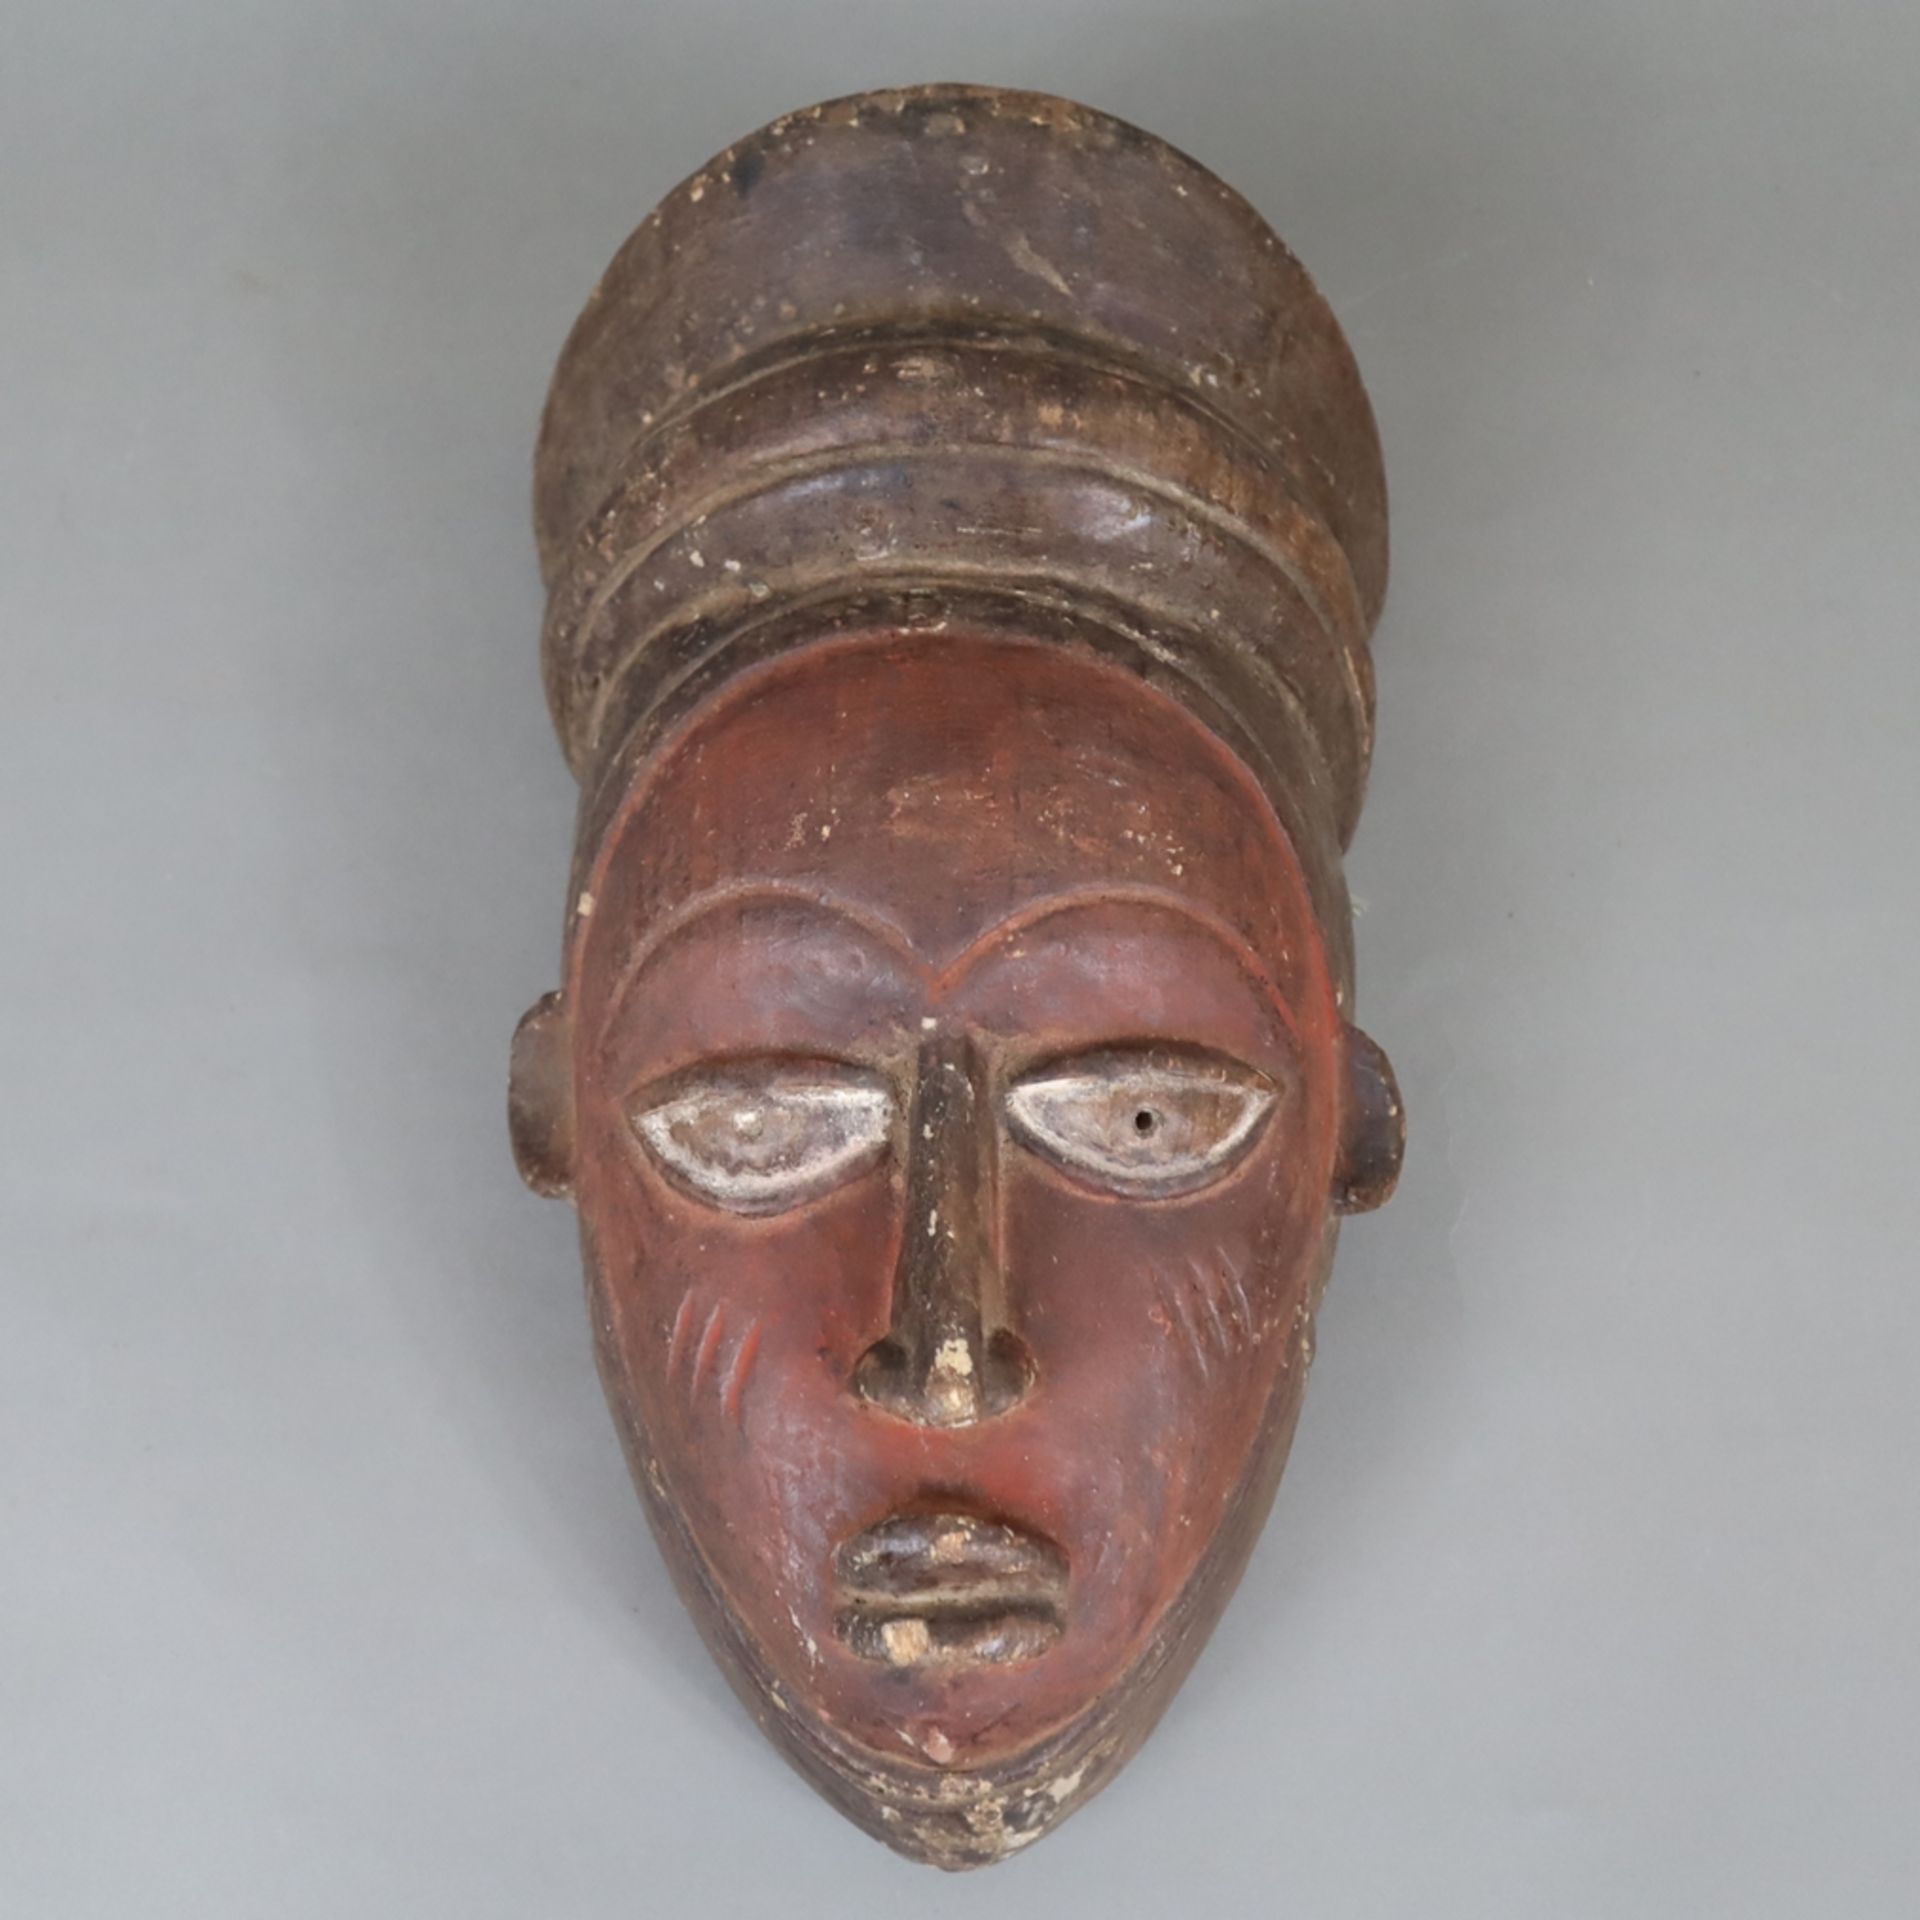 Afrikanische Holzmaske - Holz dunkel gefärbt, schwarz und rot eingefärbt, Ränder mit runden Durchbo